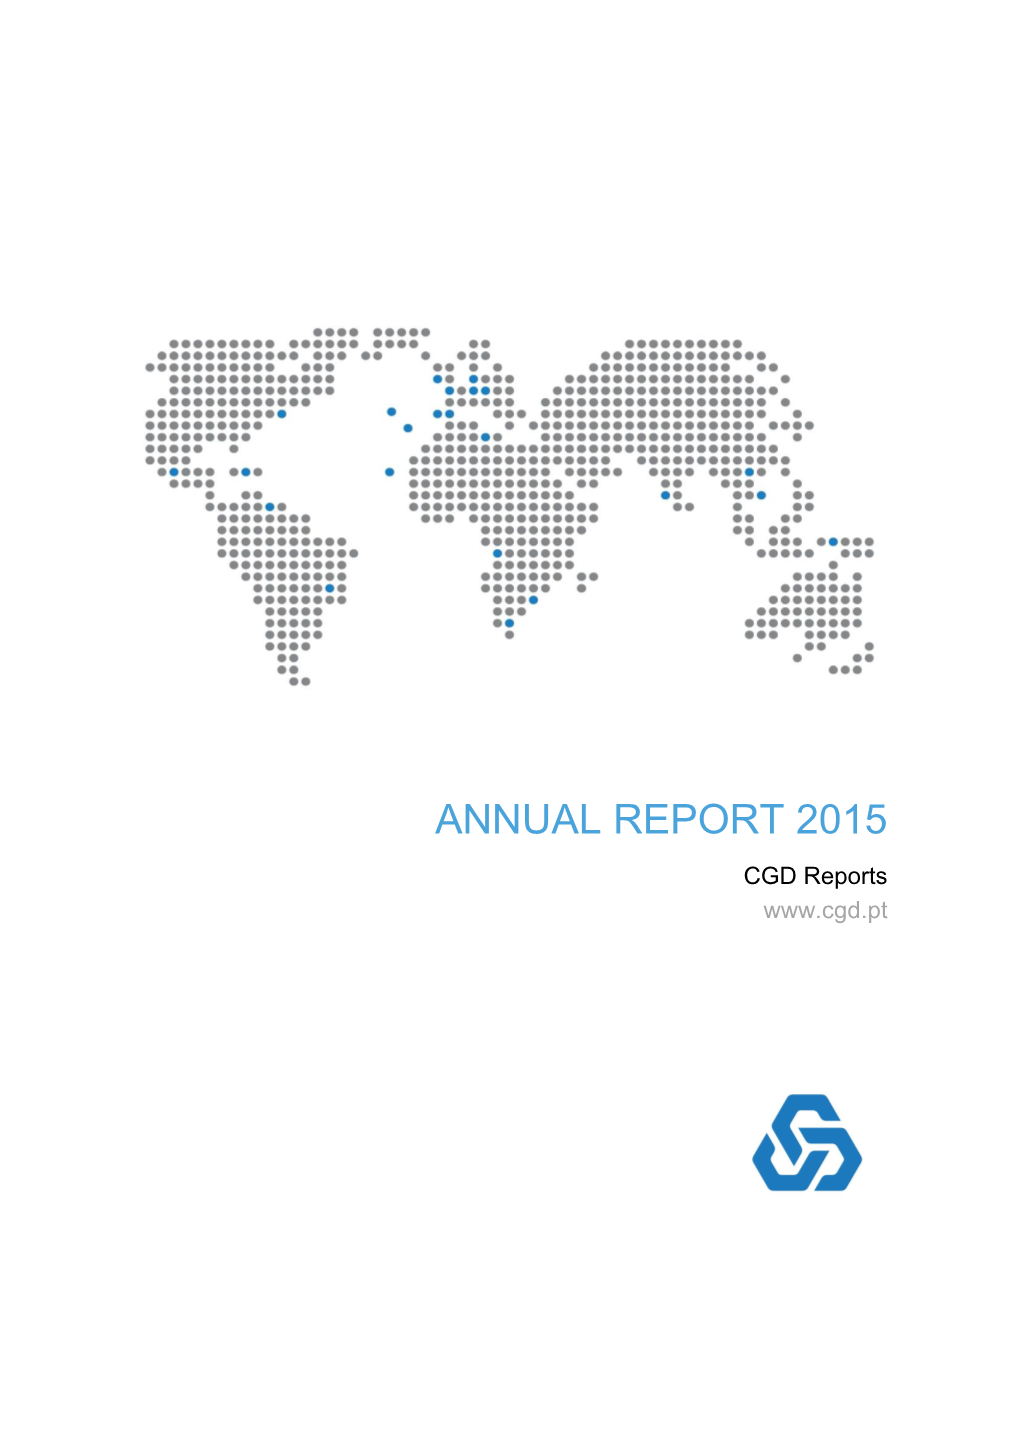 ANNUAL REPORT 2015 CGD Reports 2 ANNUAL REPORT 2015 CGD